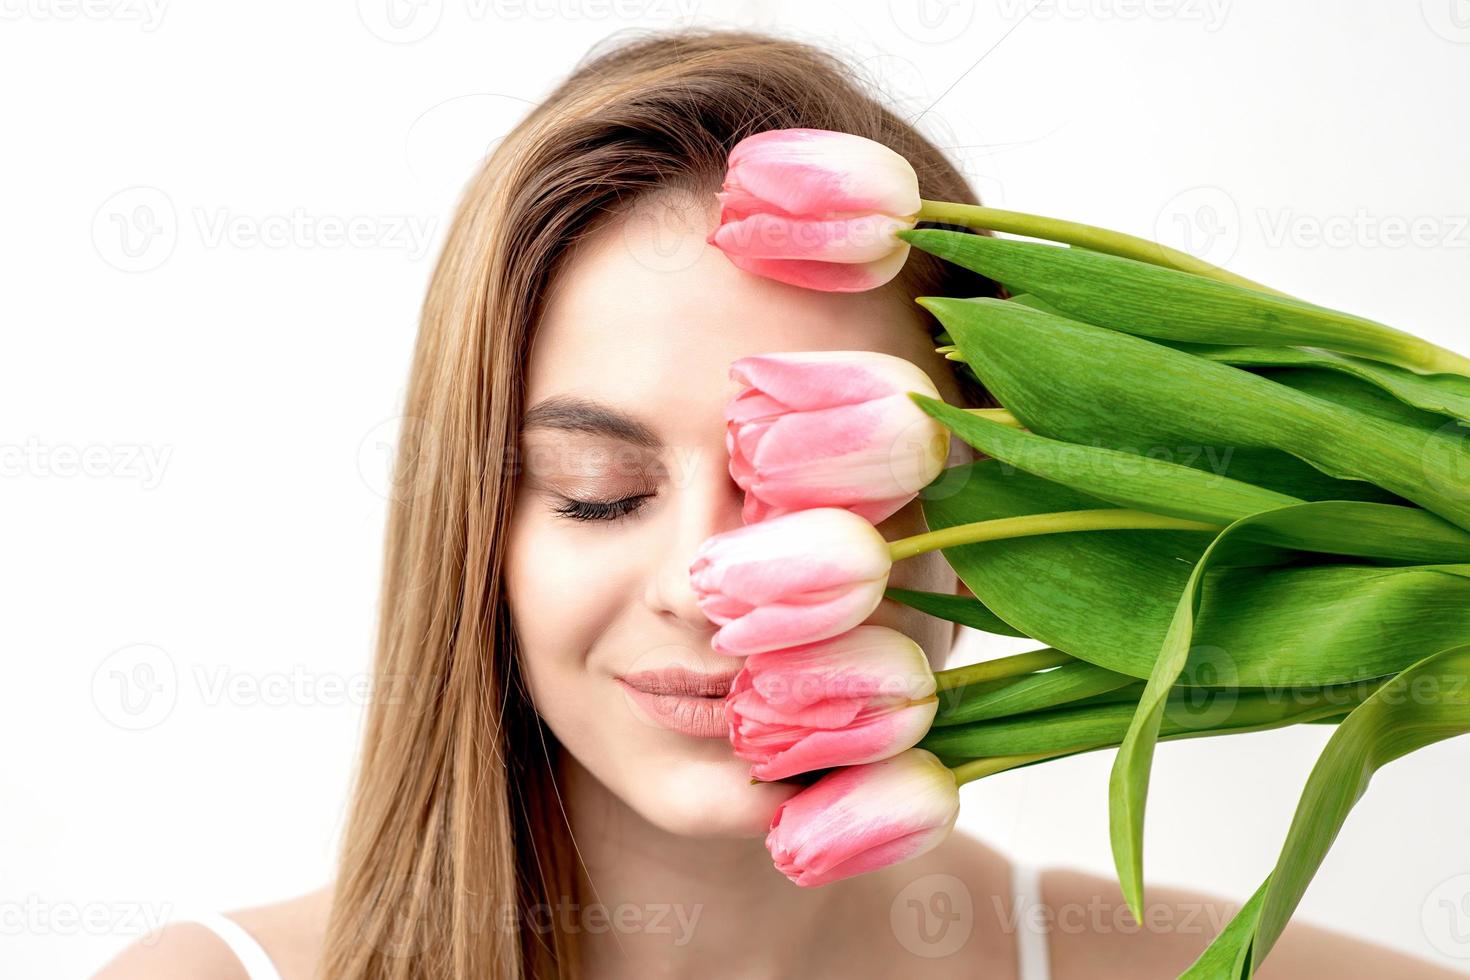 ritratto di donna con rosa tulipani foto